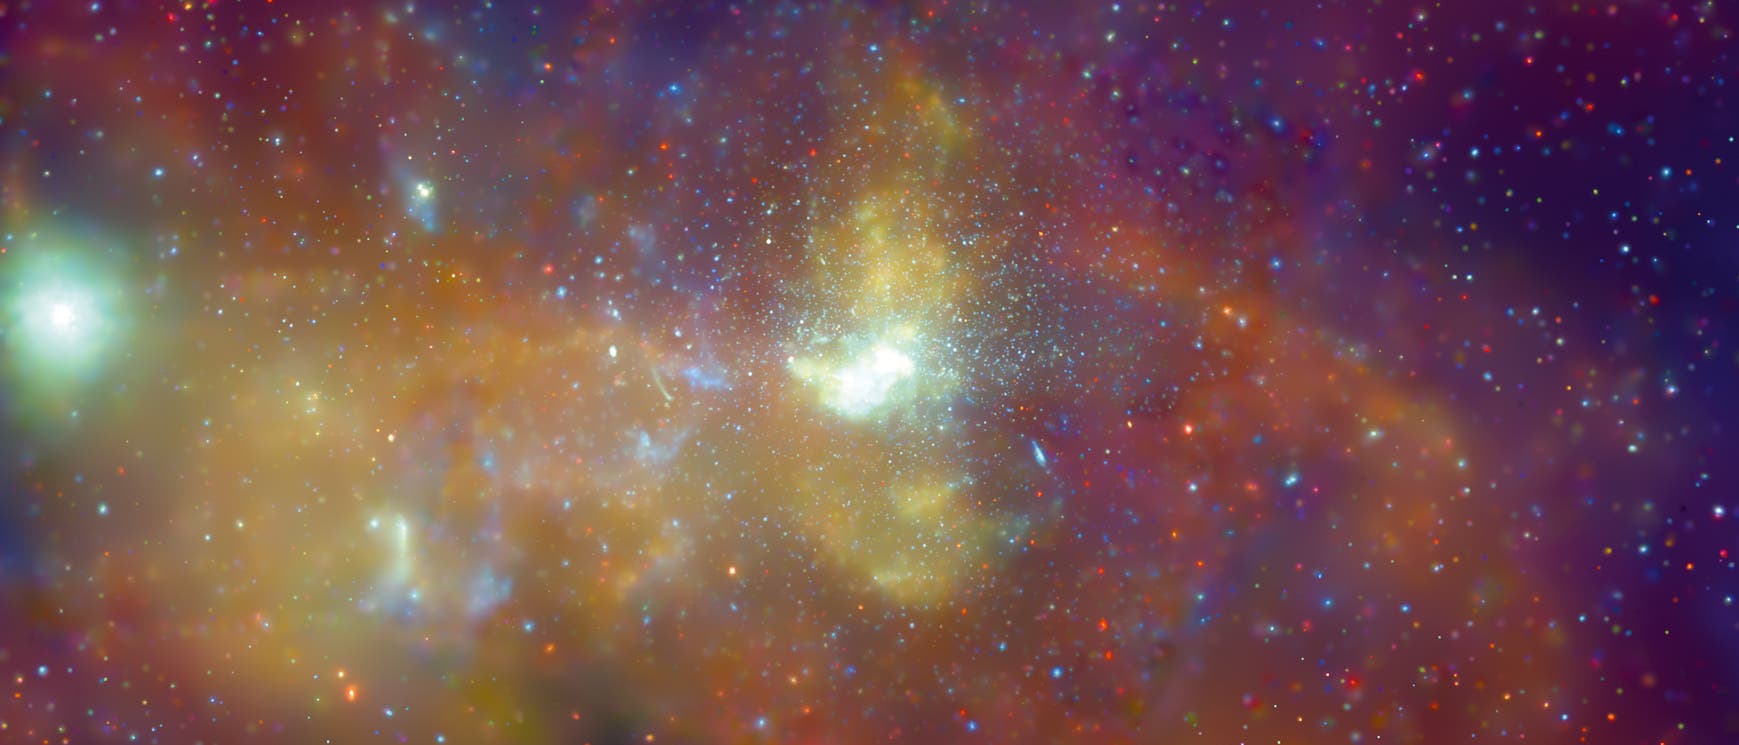 Der Zentralbereich unseres Milchstraßensystems im Röntgenblick des Weltraumobservatoriums Chandra